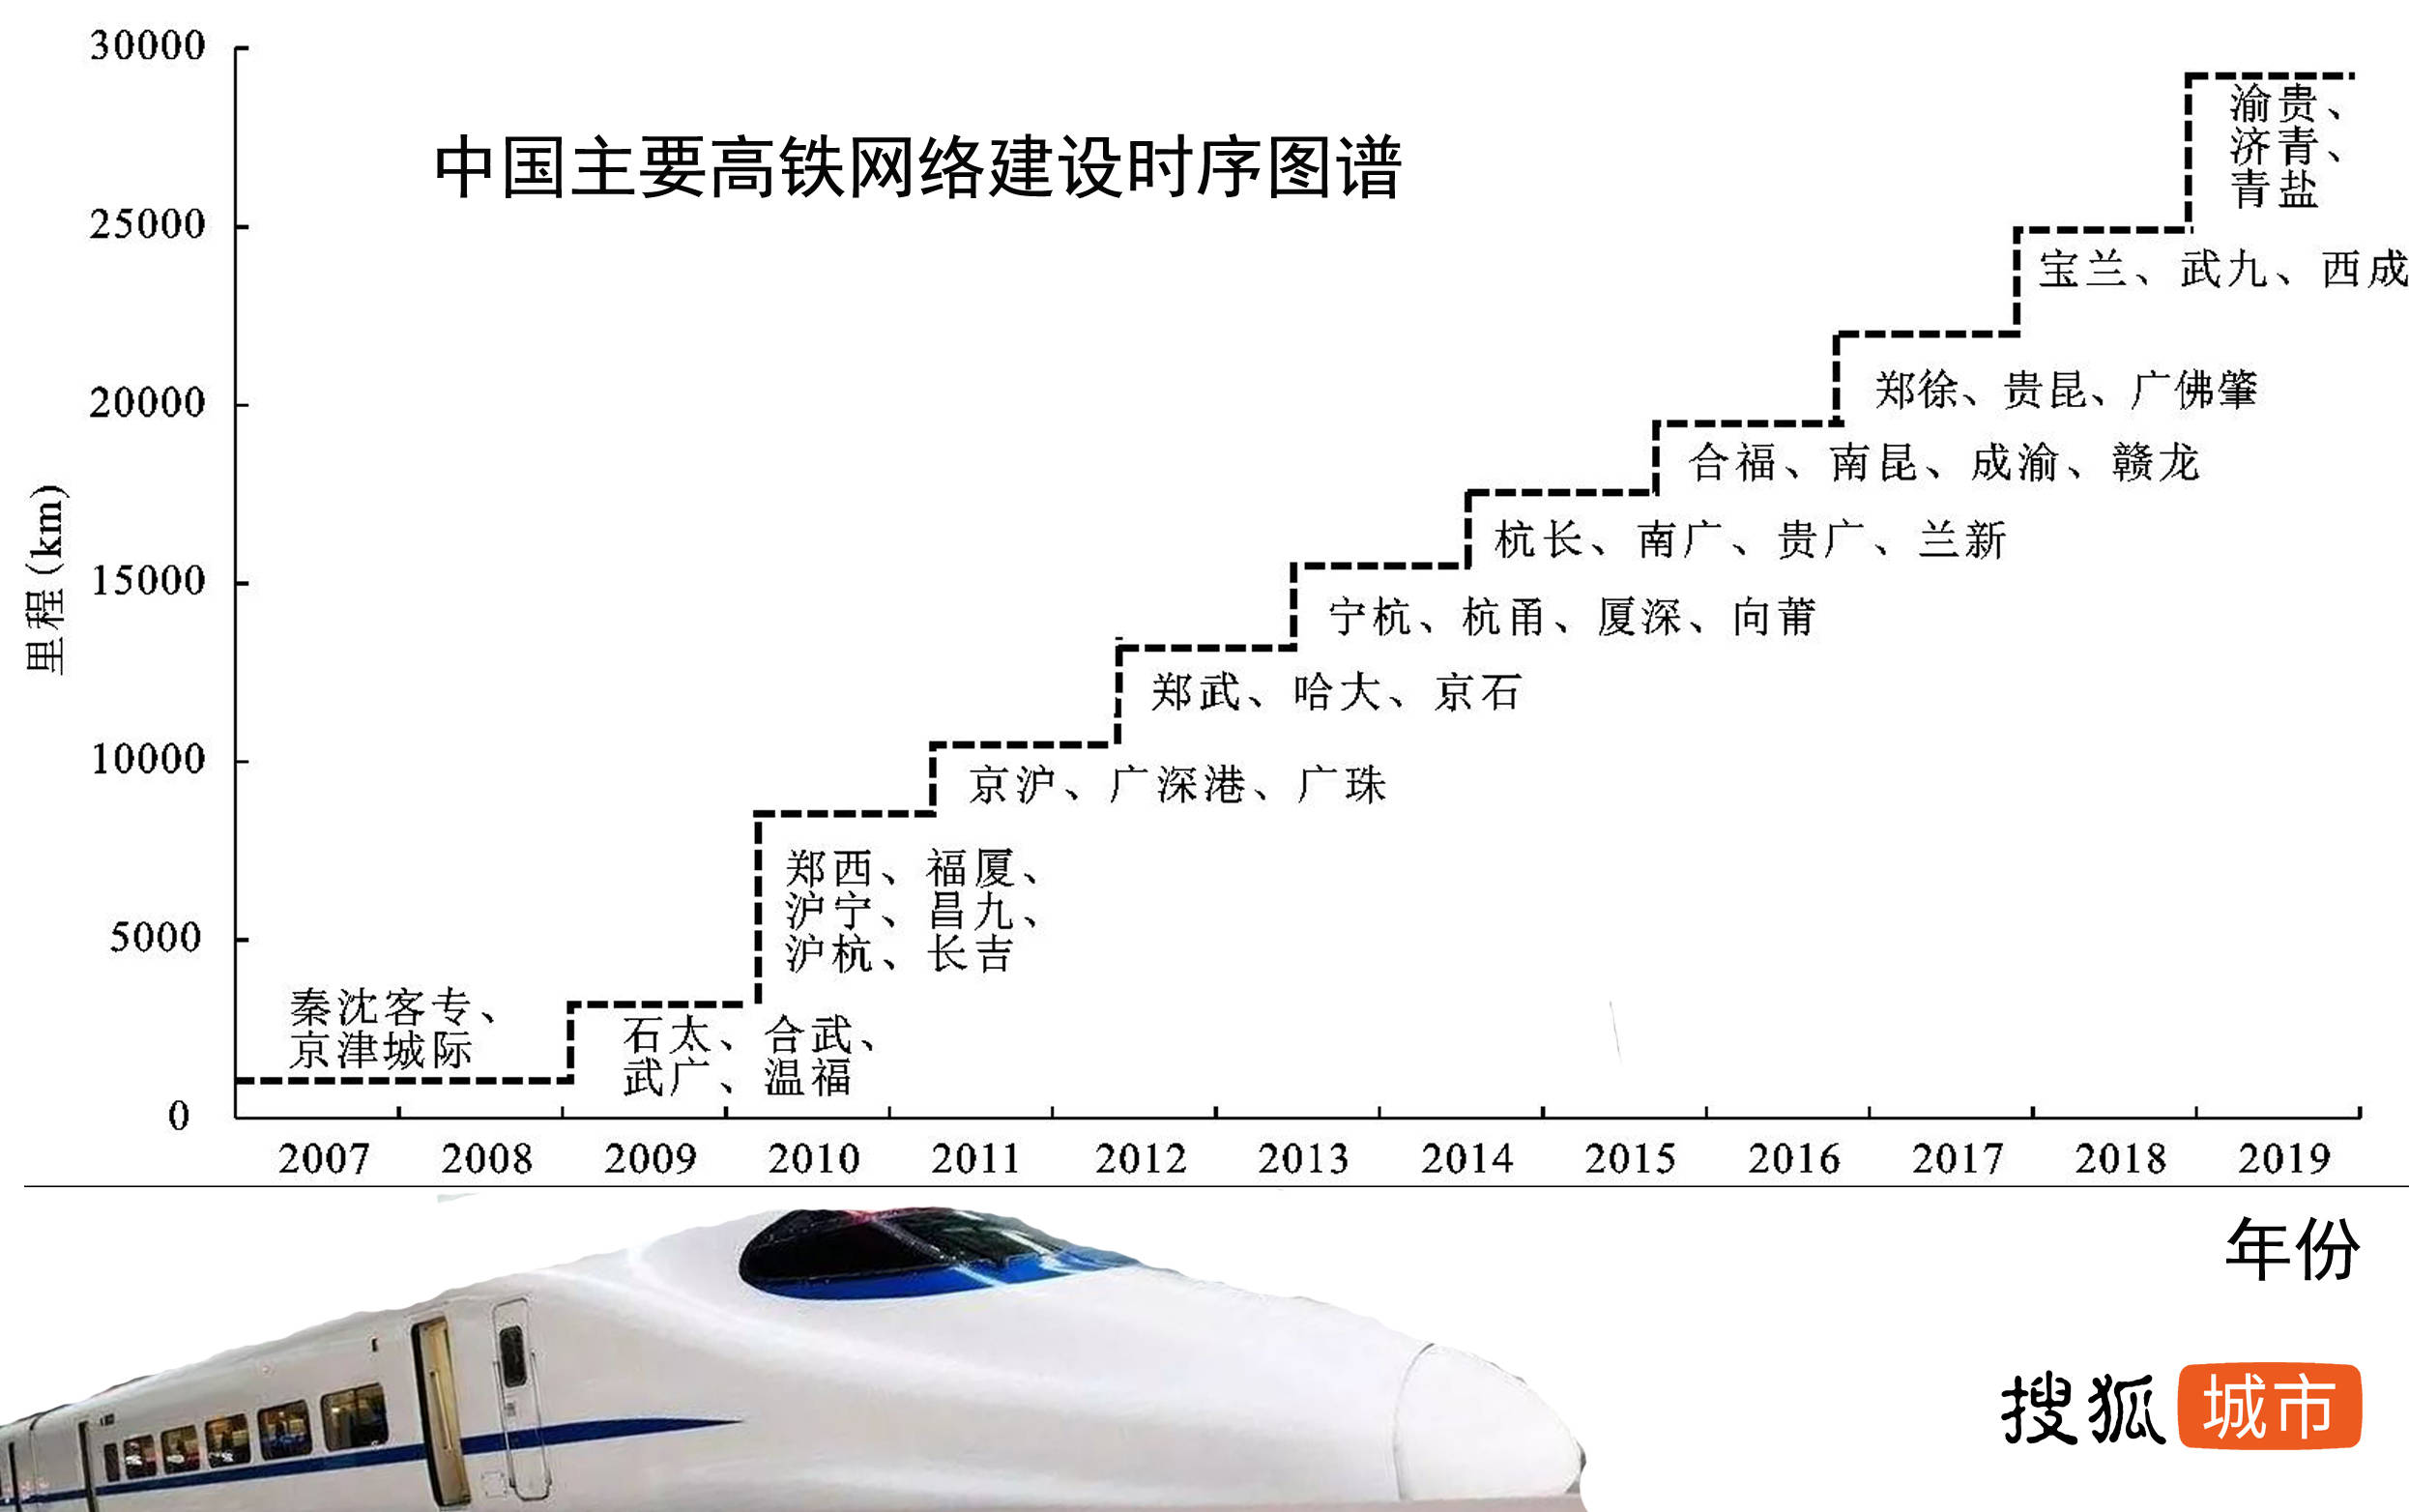 中国主要高铁网建设时序